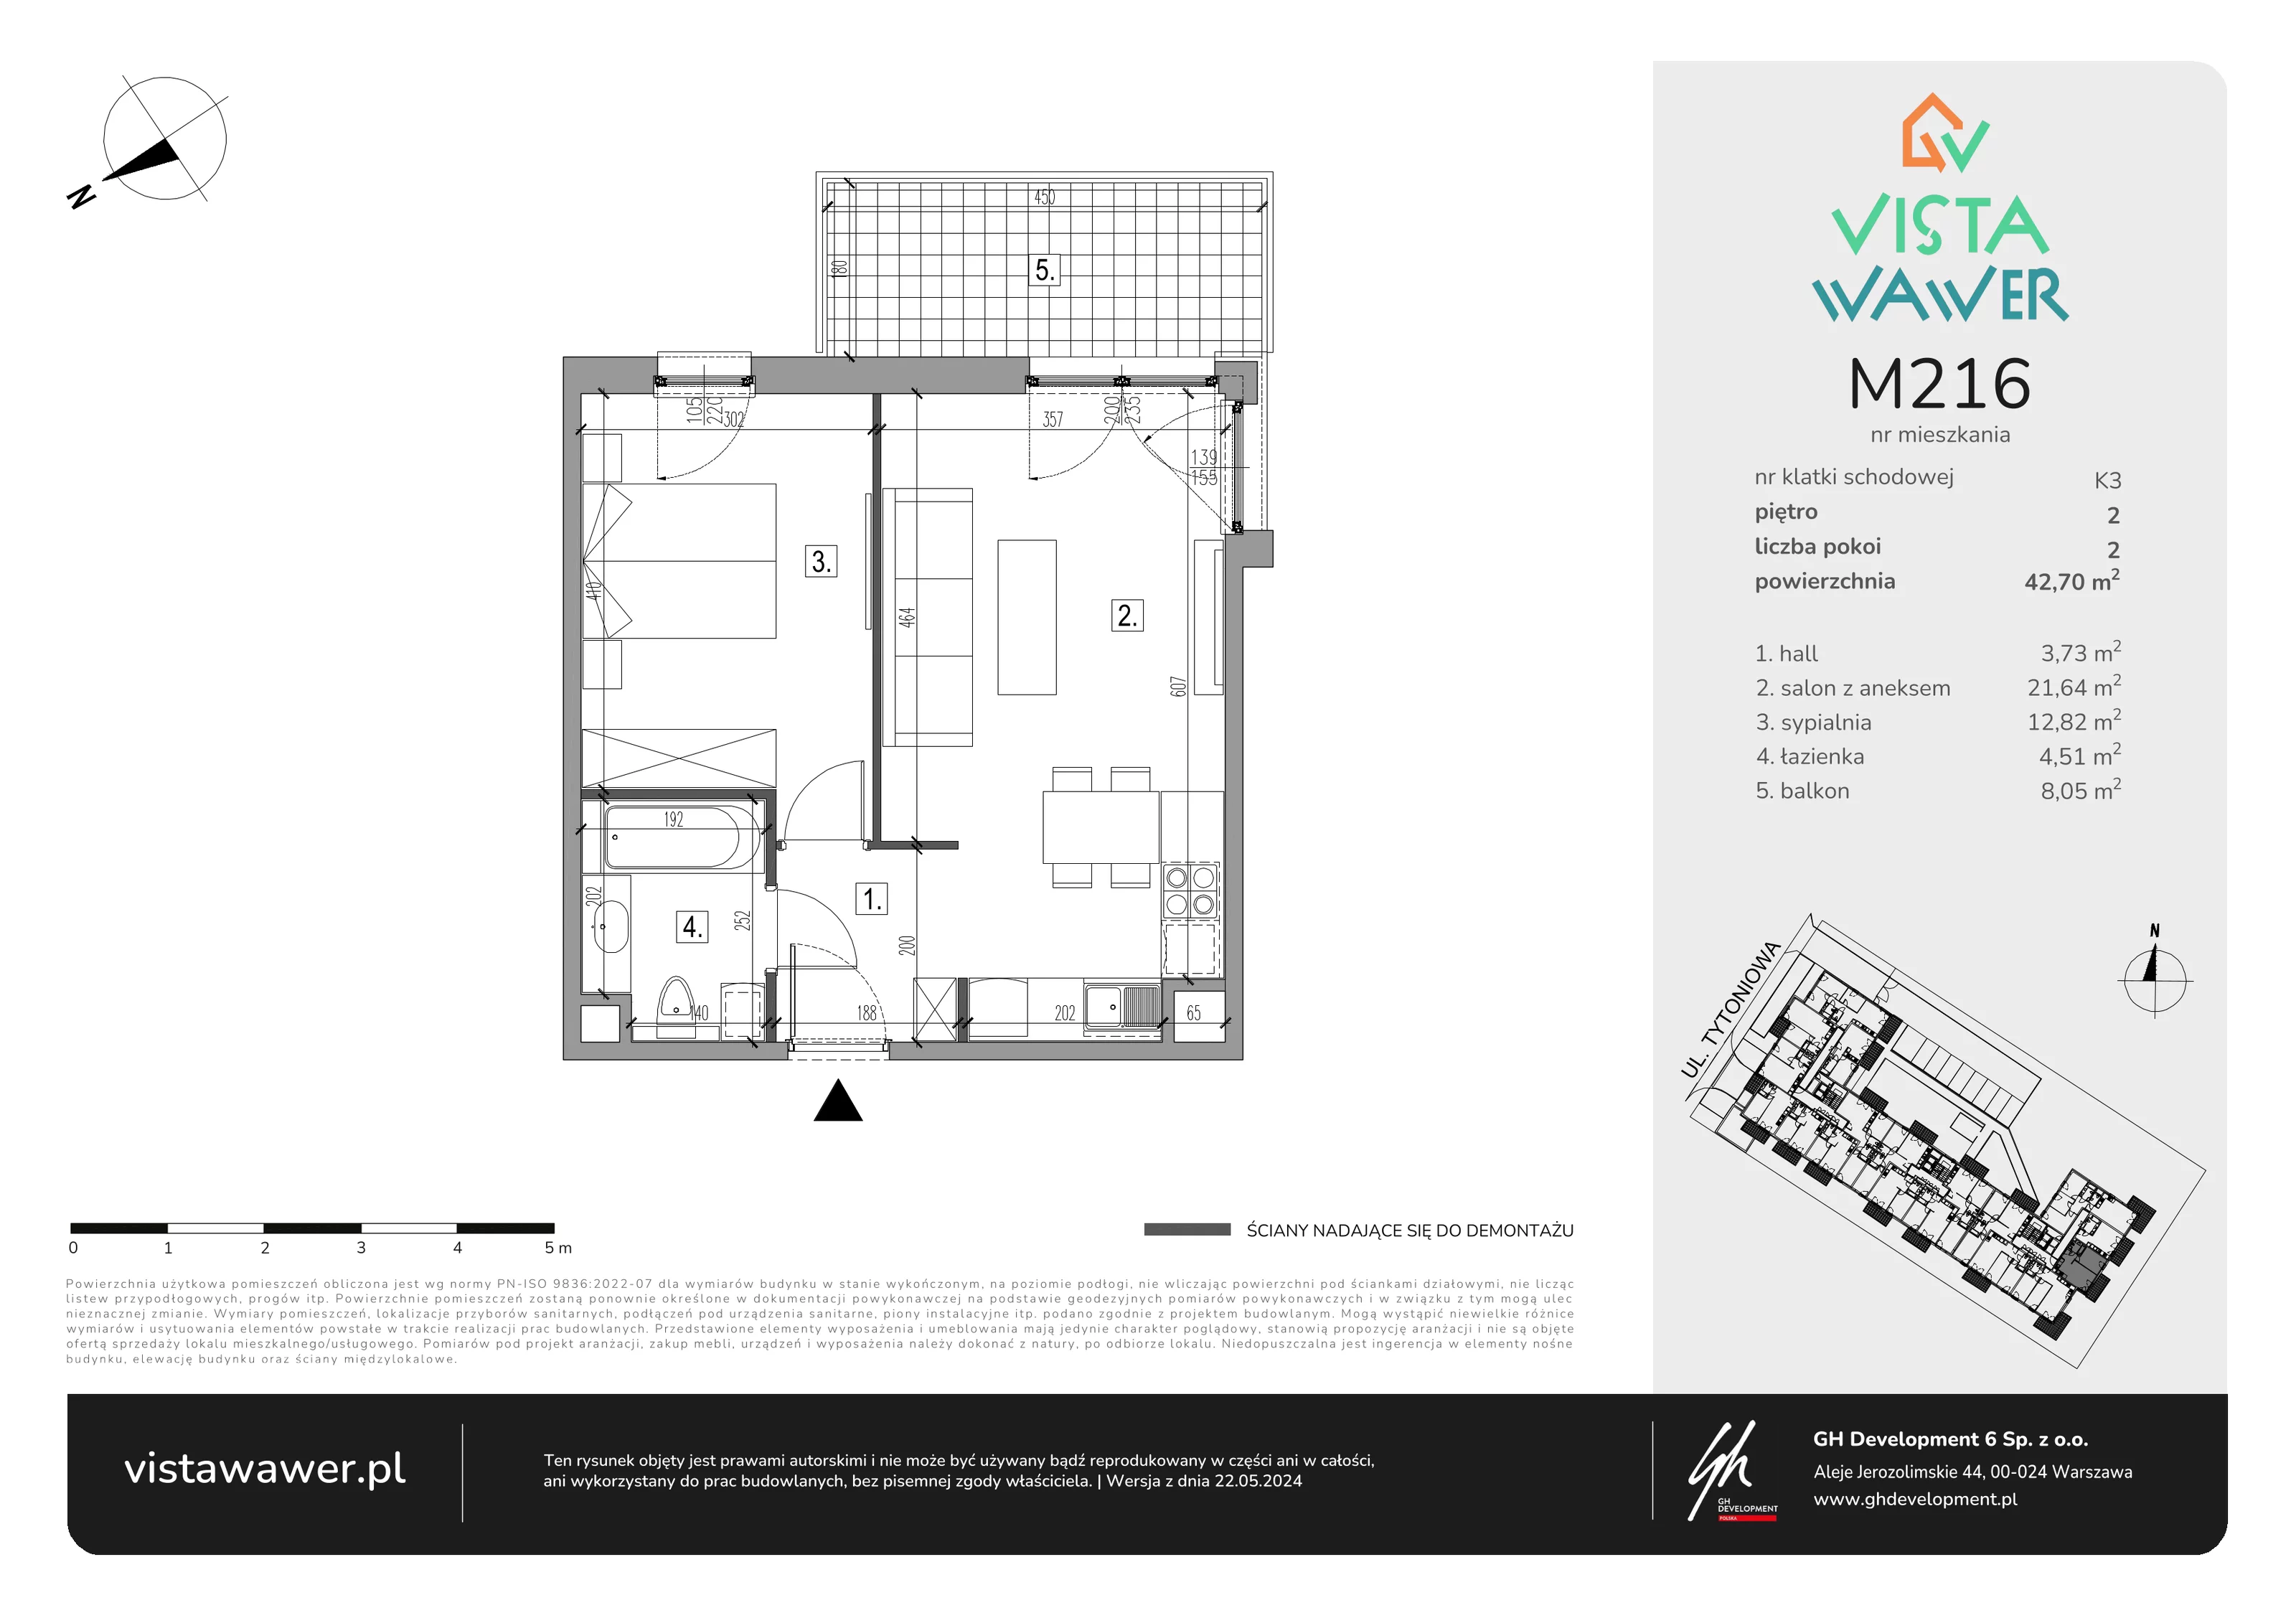 Mieszkanie 42,70 m², piętro 2, oferta nr M216, Vista Wawer, Warszawa, Wawer, Gocławek, ul. Tytoniowa 20